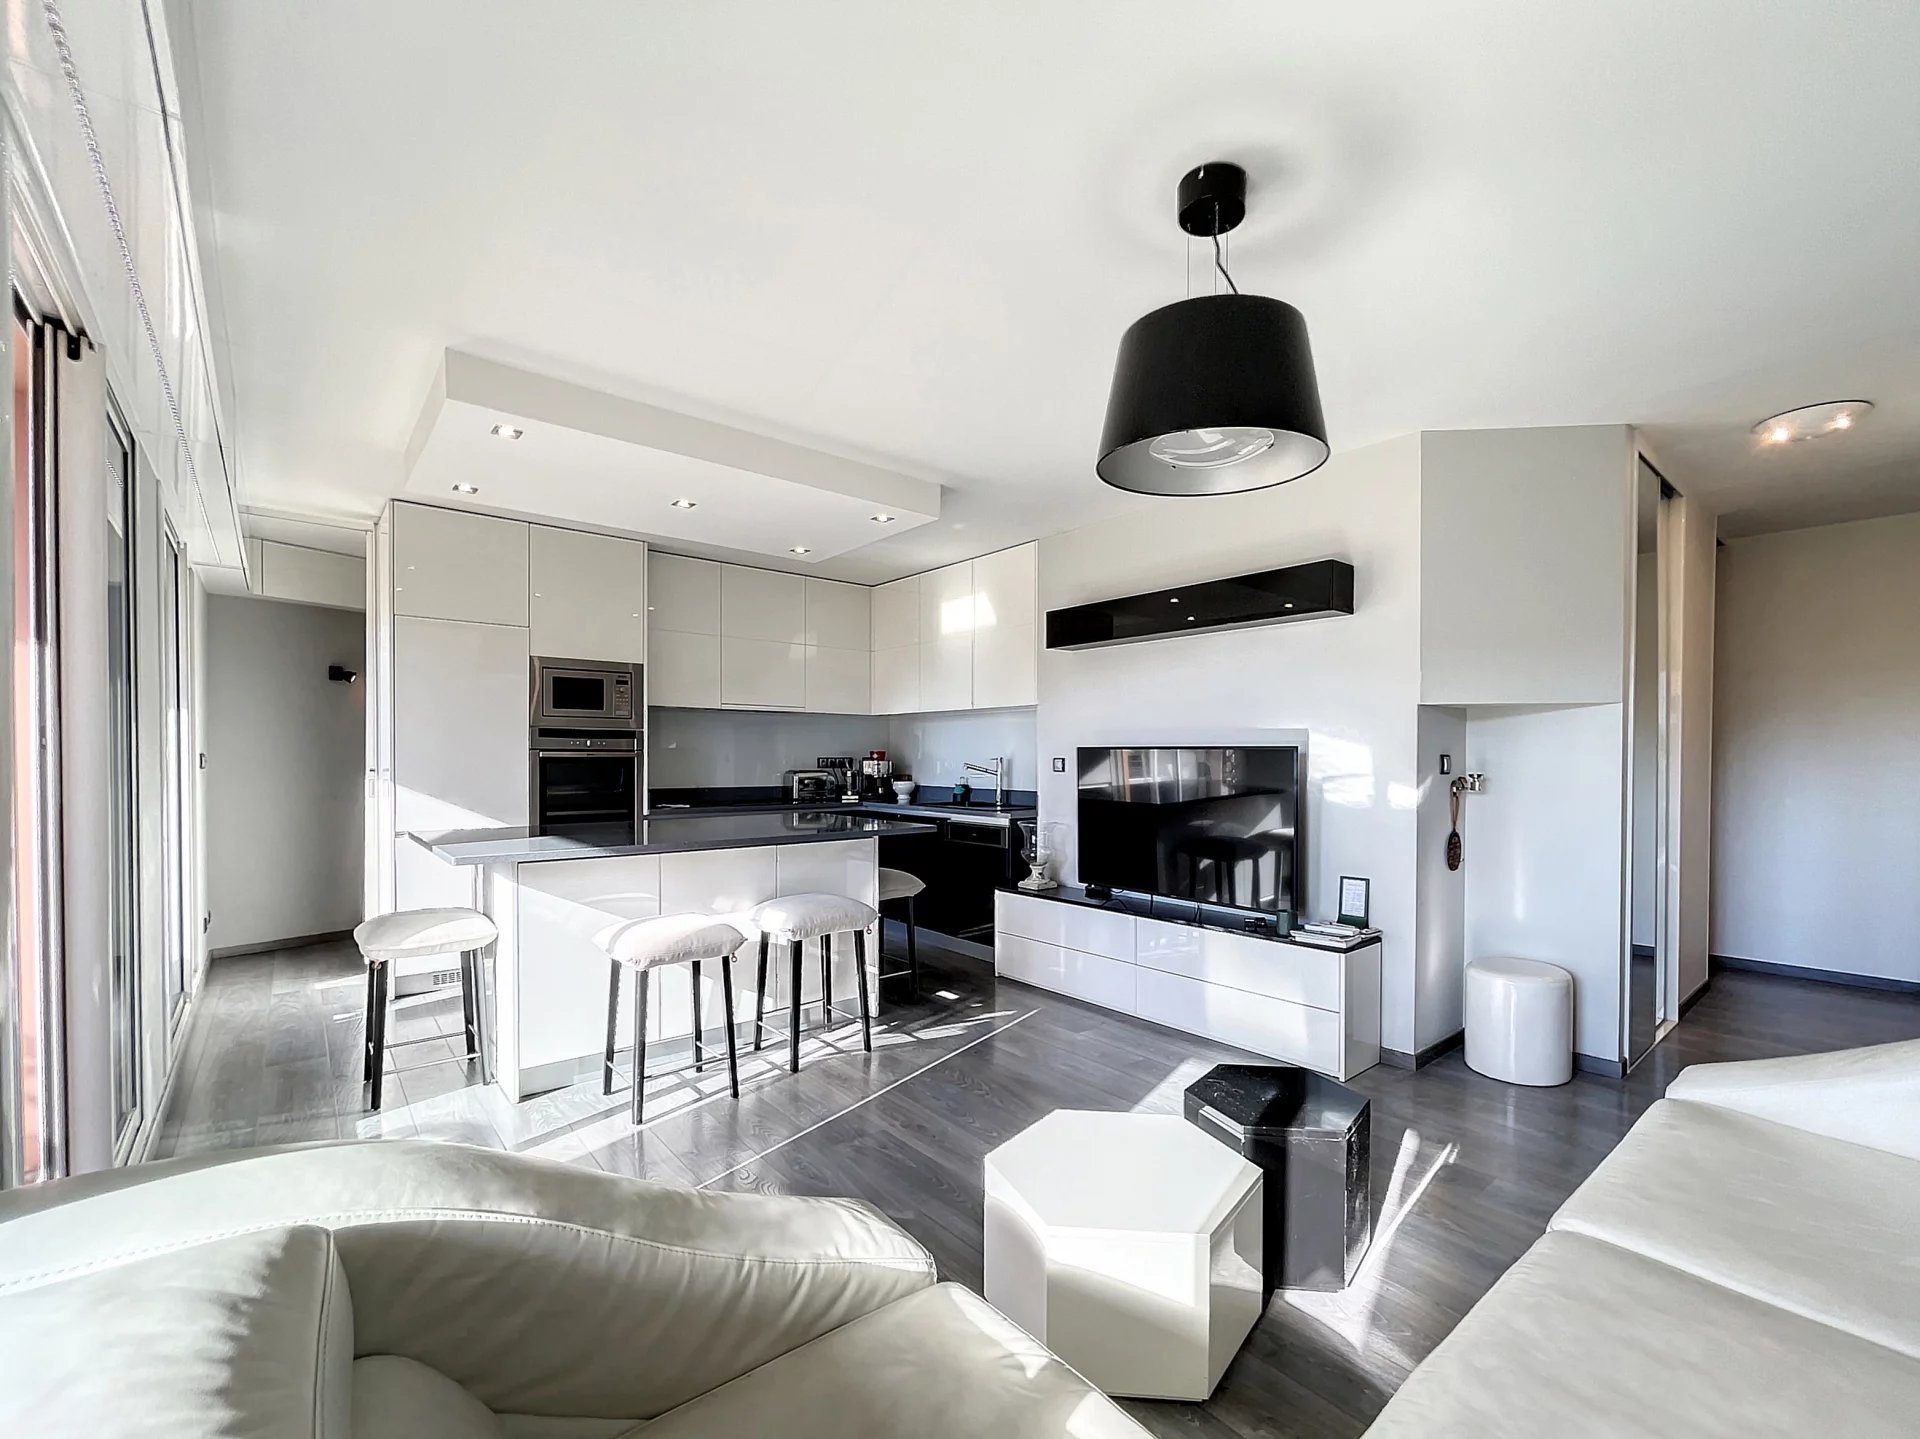 Appartement moderne équipé - Allées Provençales